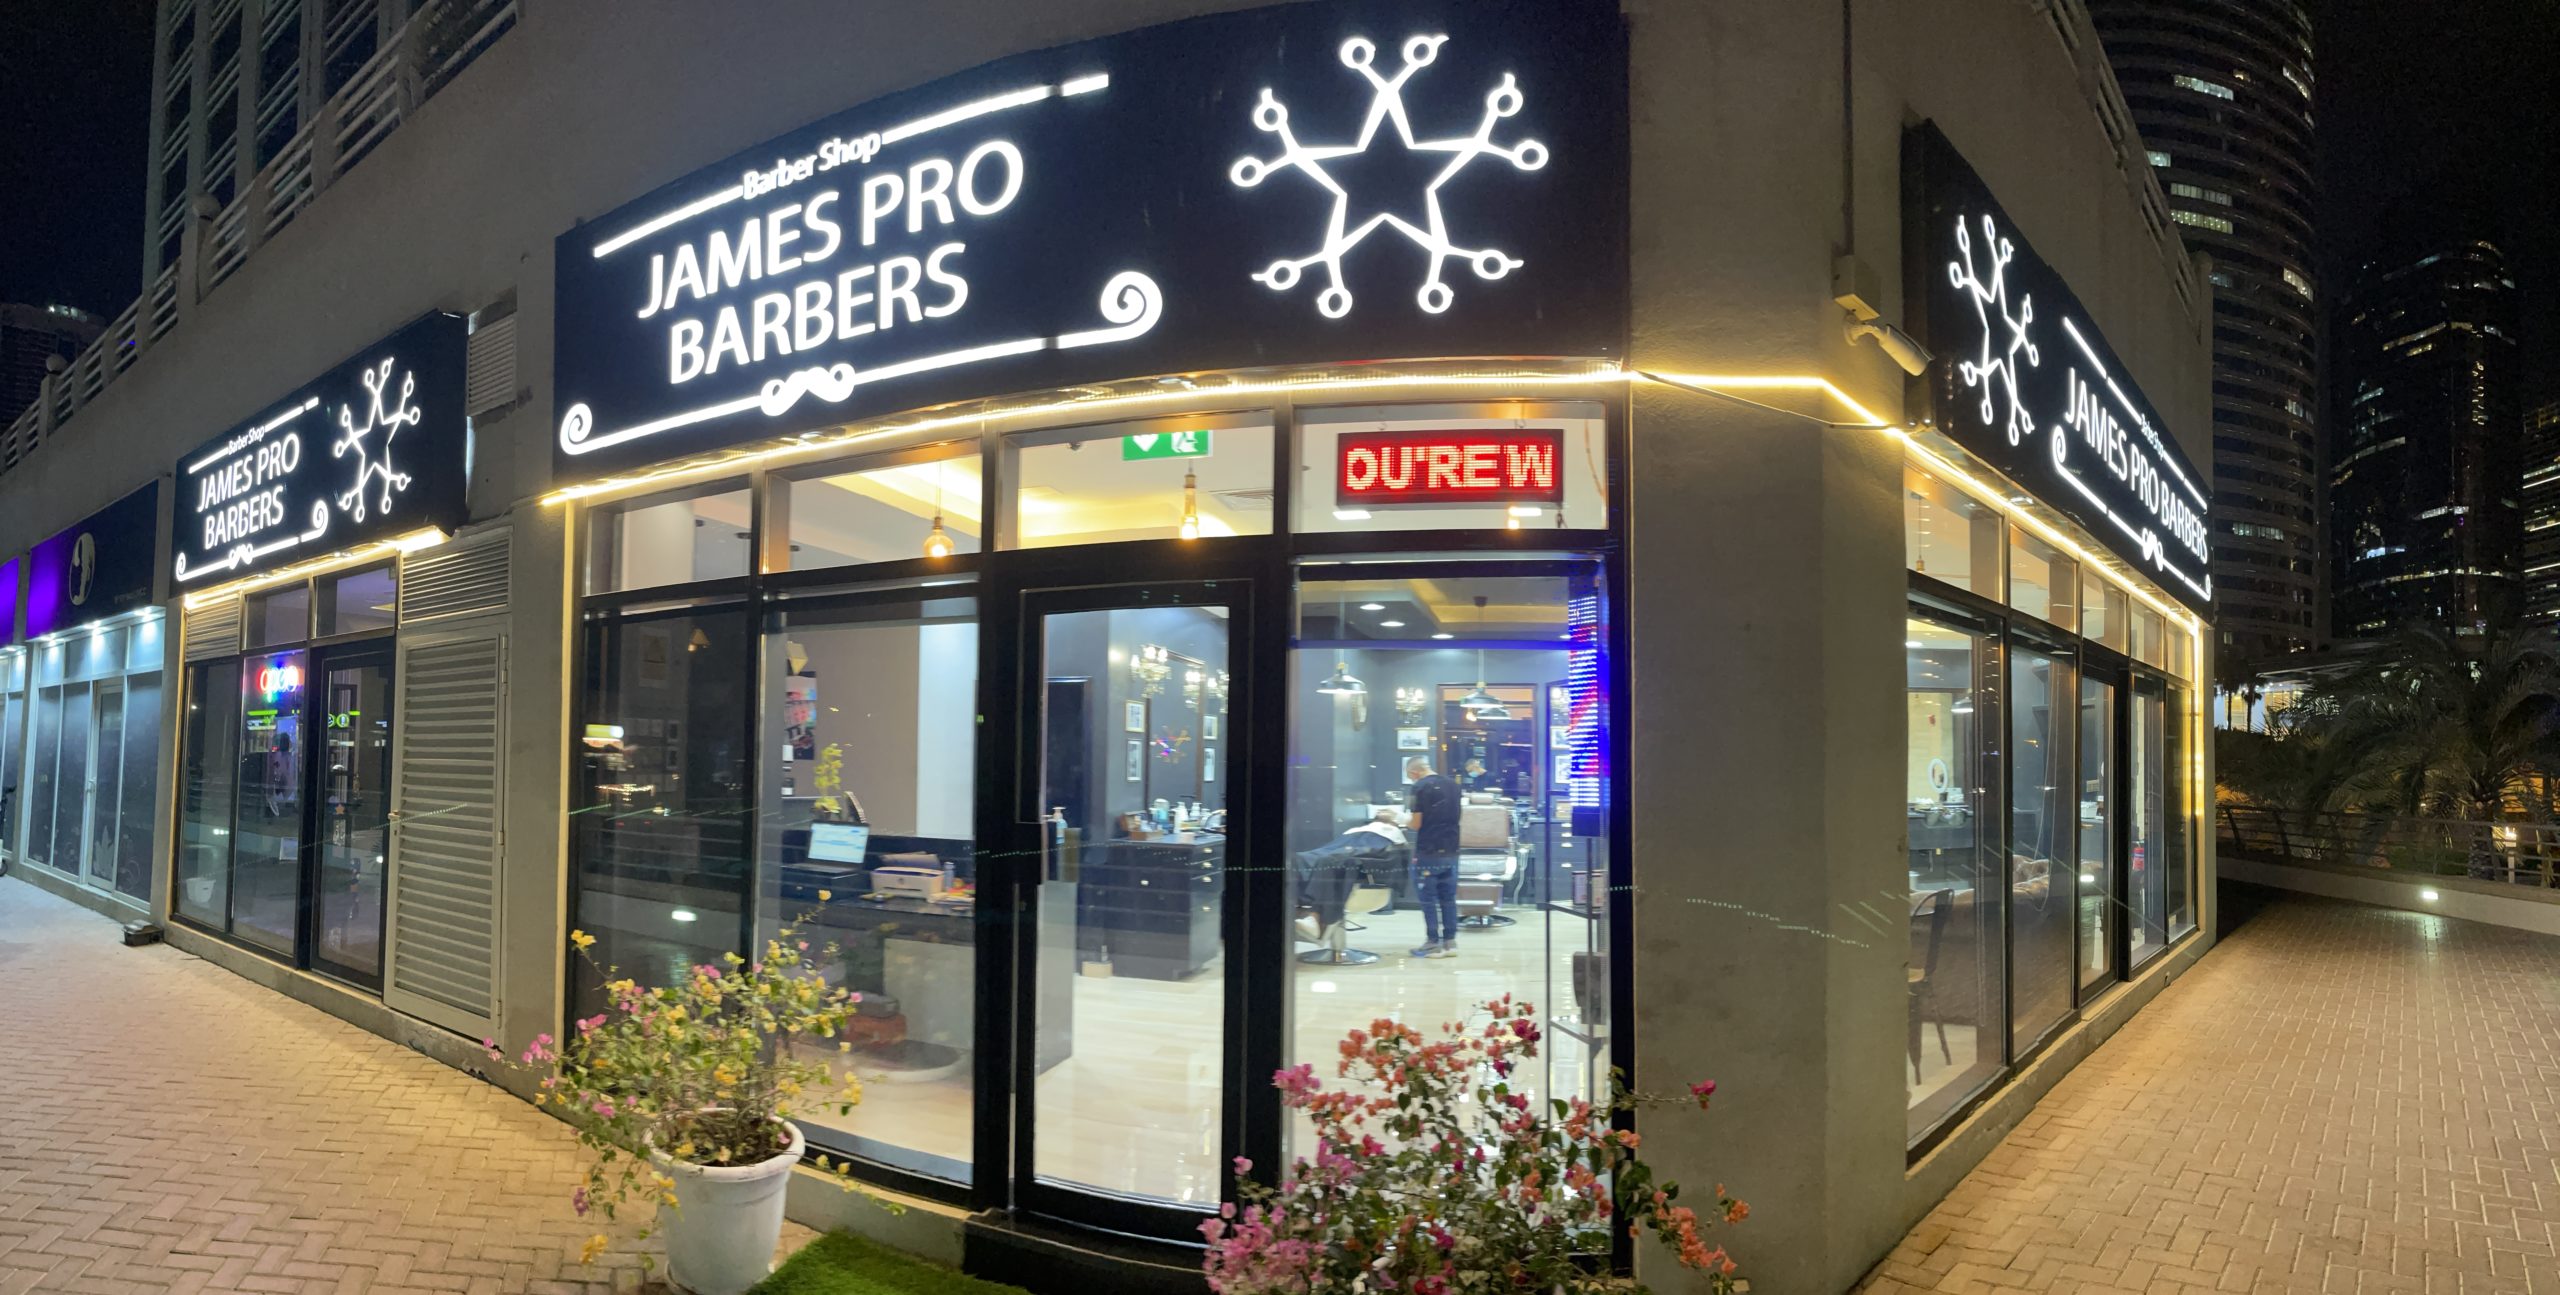 James pro barber shop location